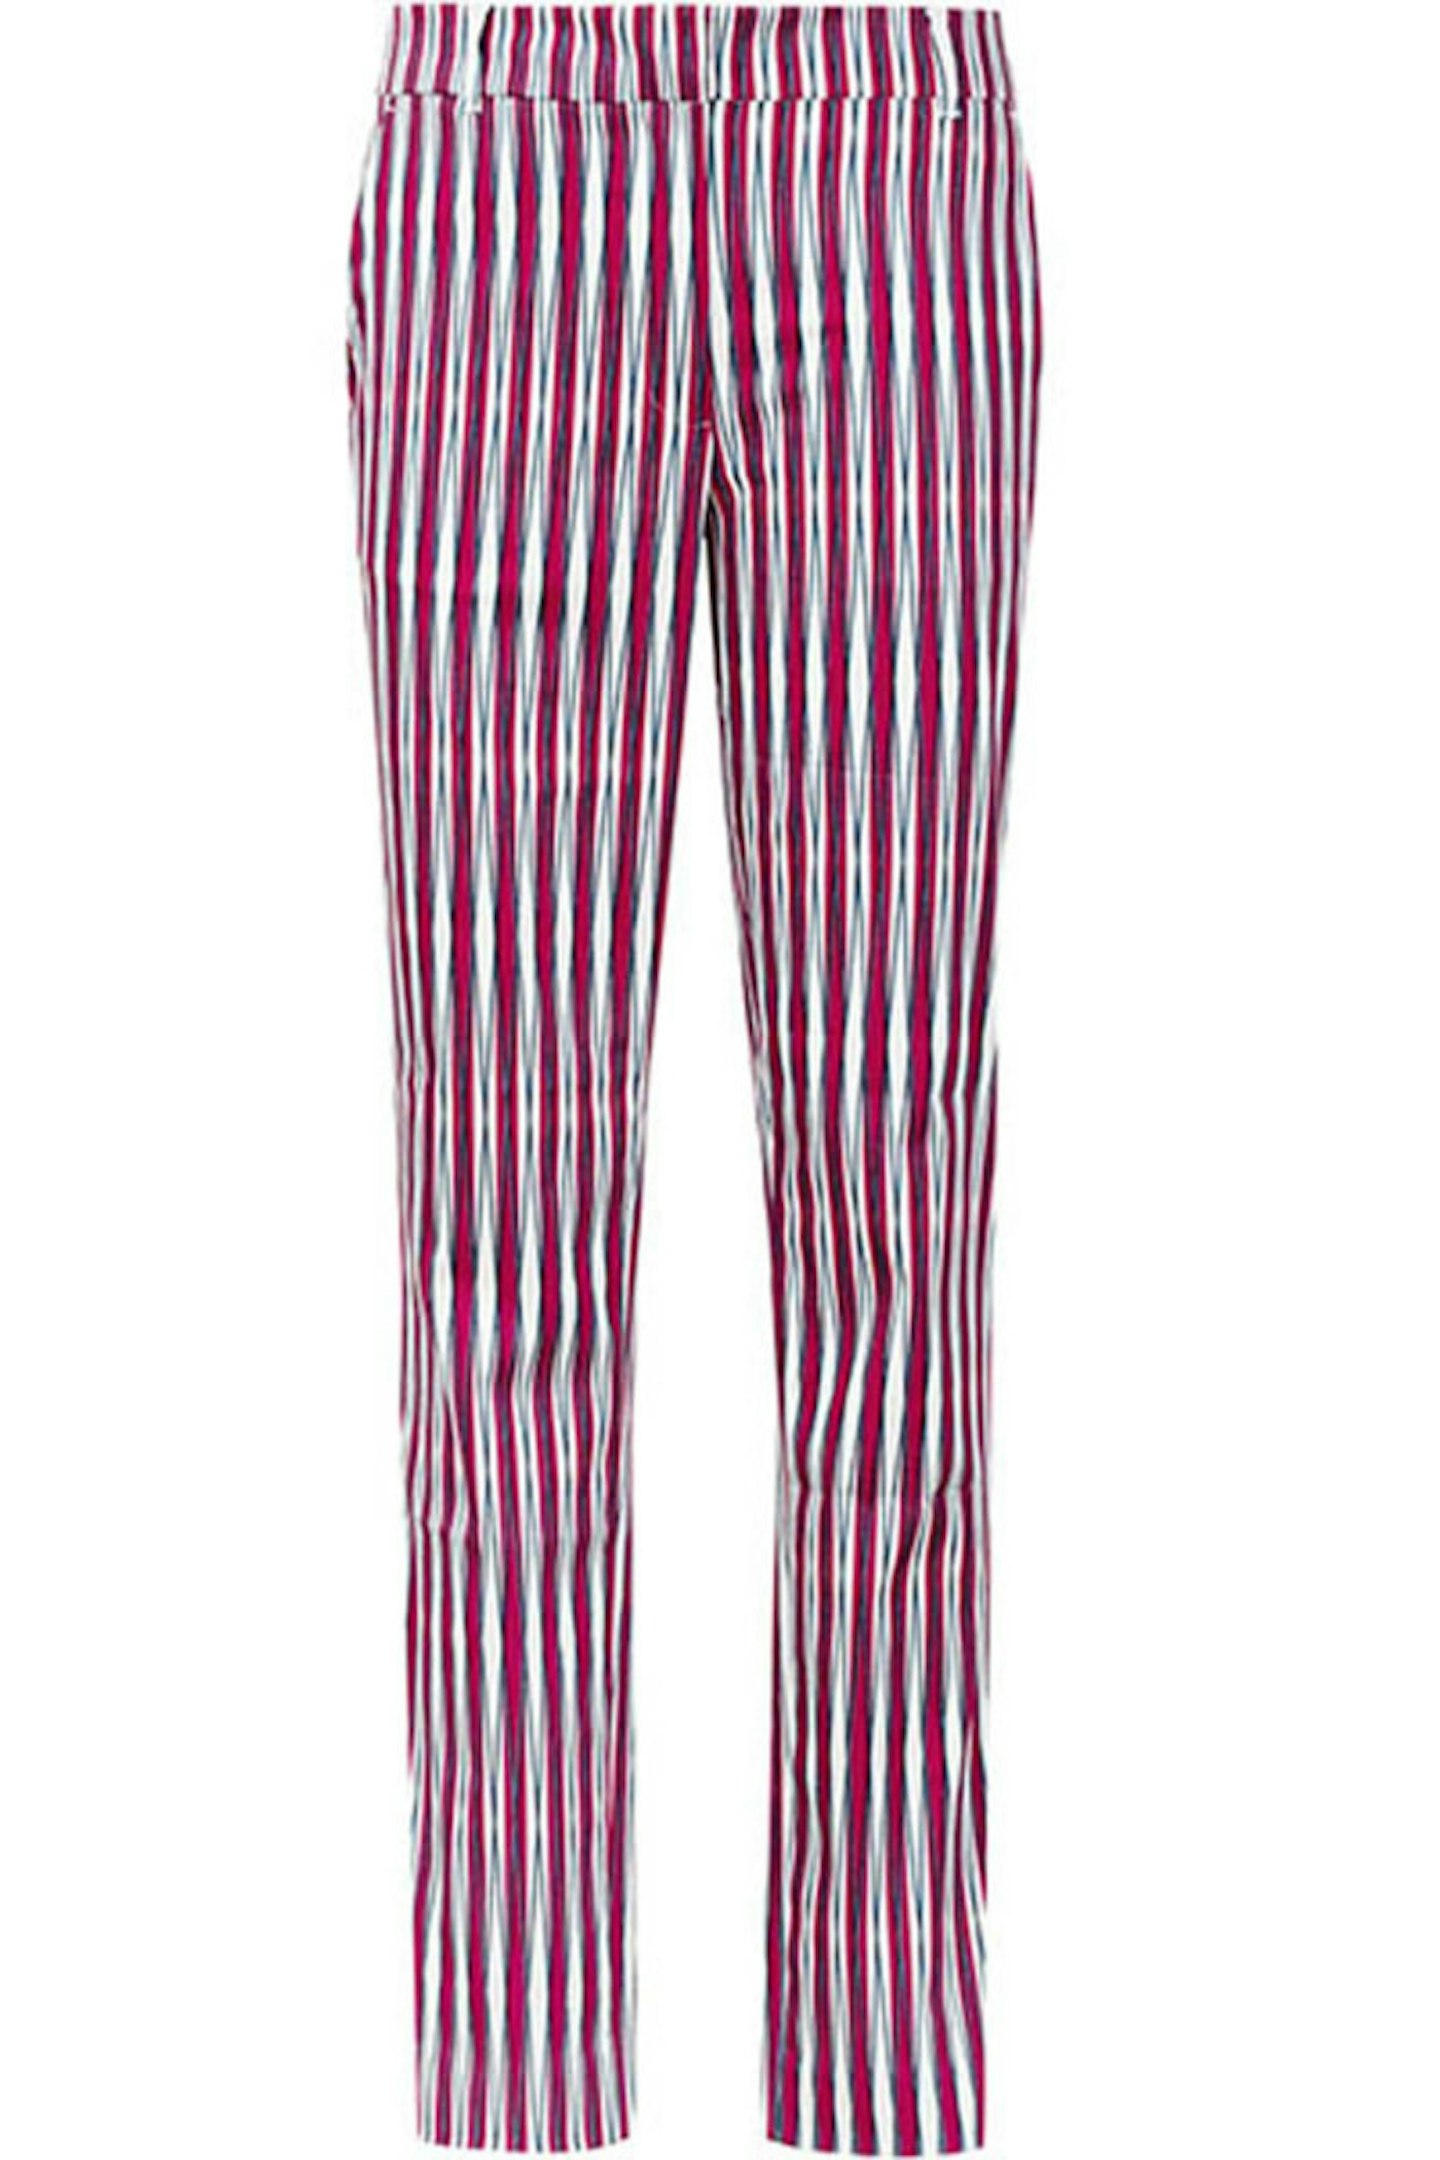 Stripe Trousers, £95, Reiss